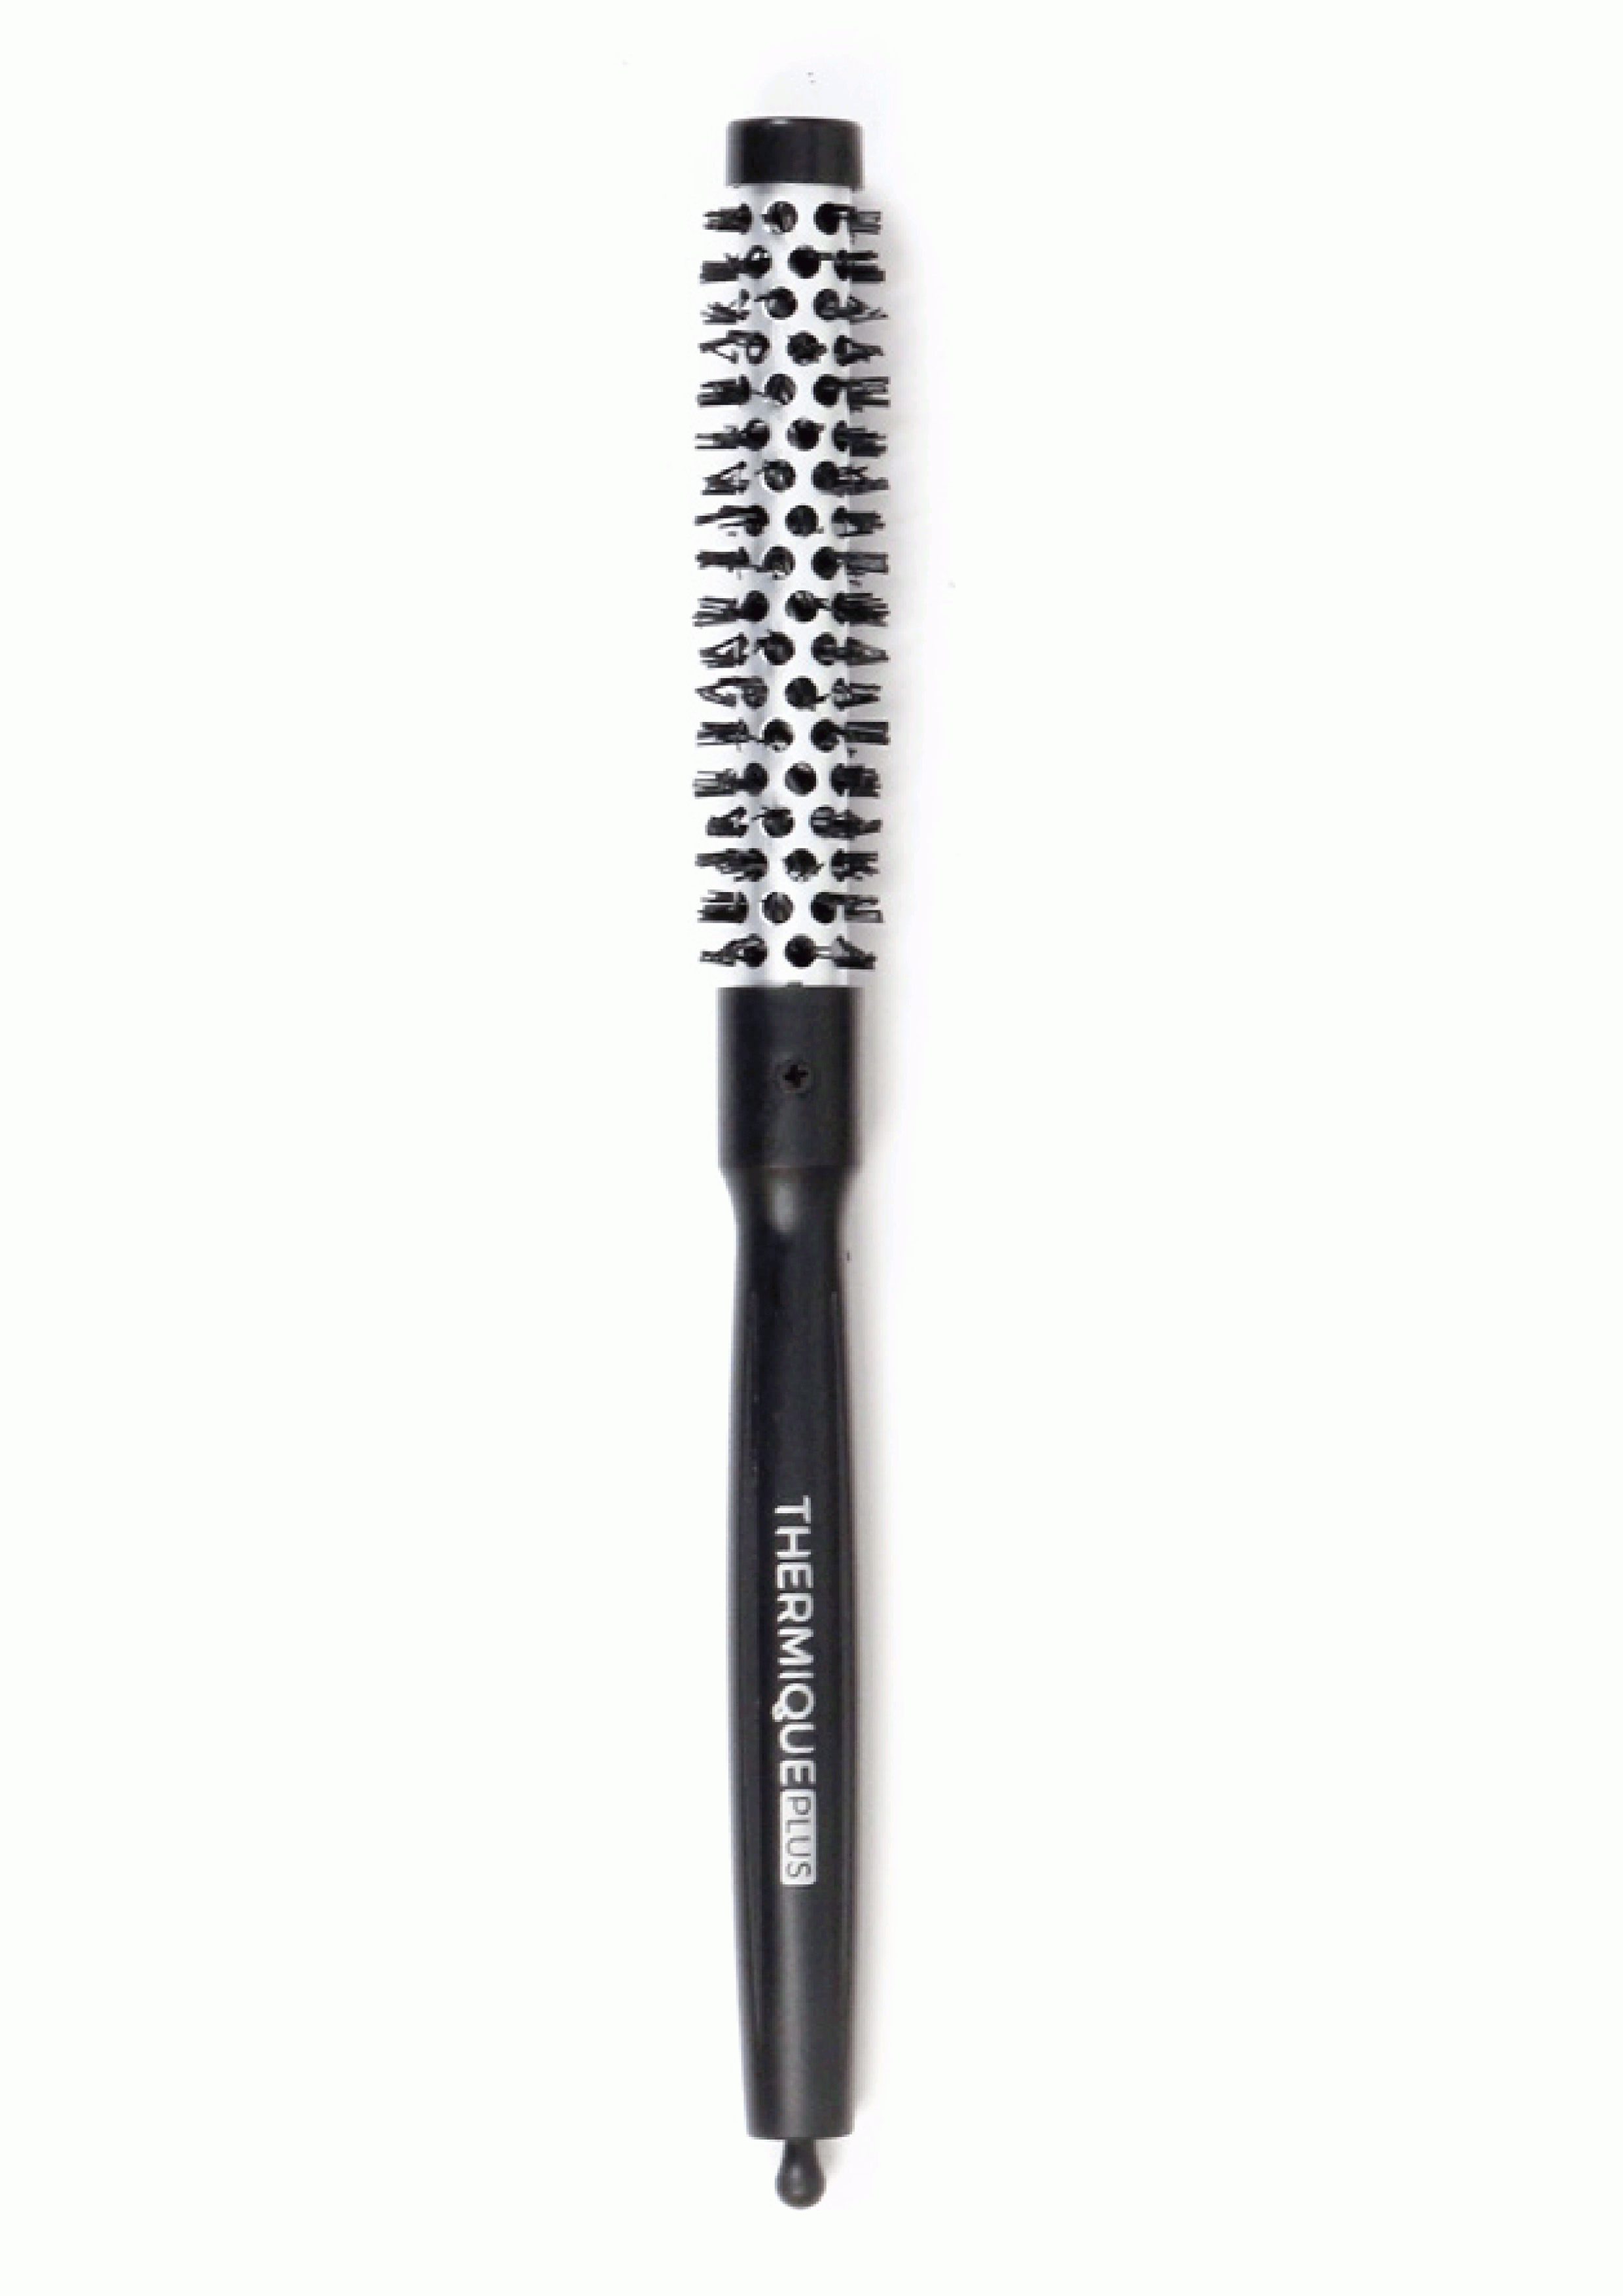 Giubra - Cepillo Térmico THERMIQUE PLUS de 13 mm